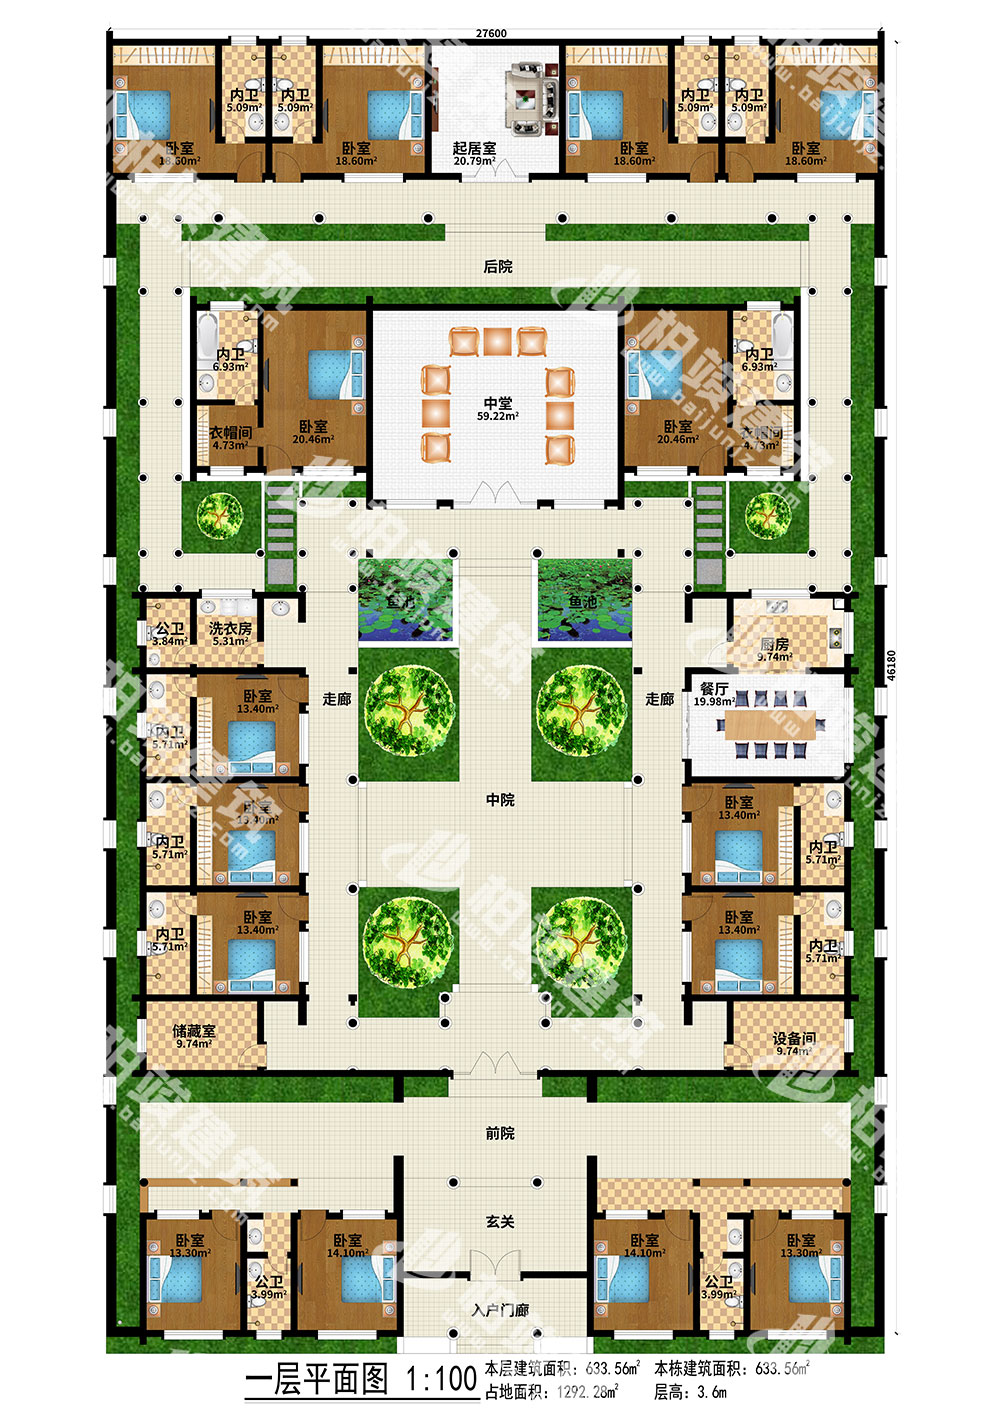 农村自建四合院设计图,三进院落,占地1292㎡,内部15室